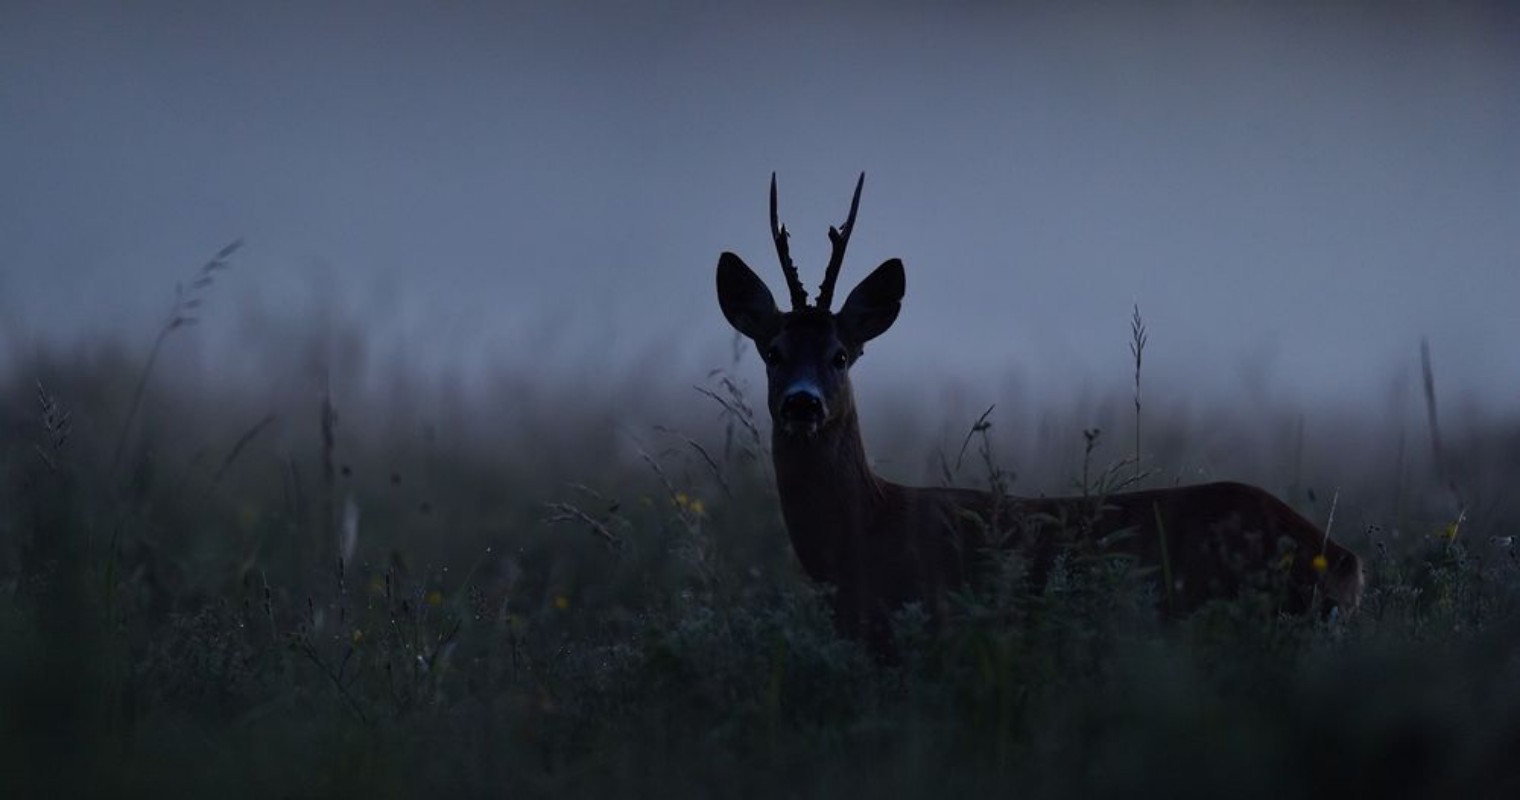 Afbeeldingen van Roe deer at night Roebuck at night Animal in the mist